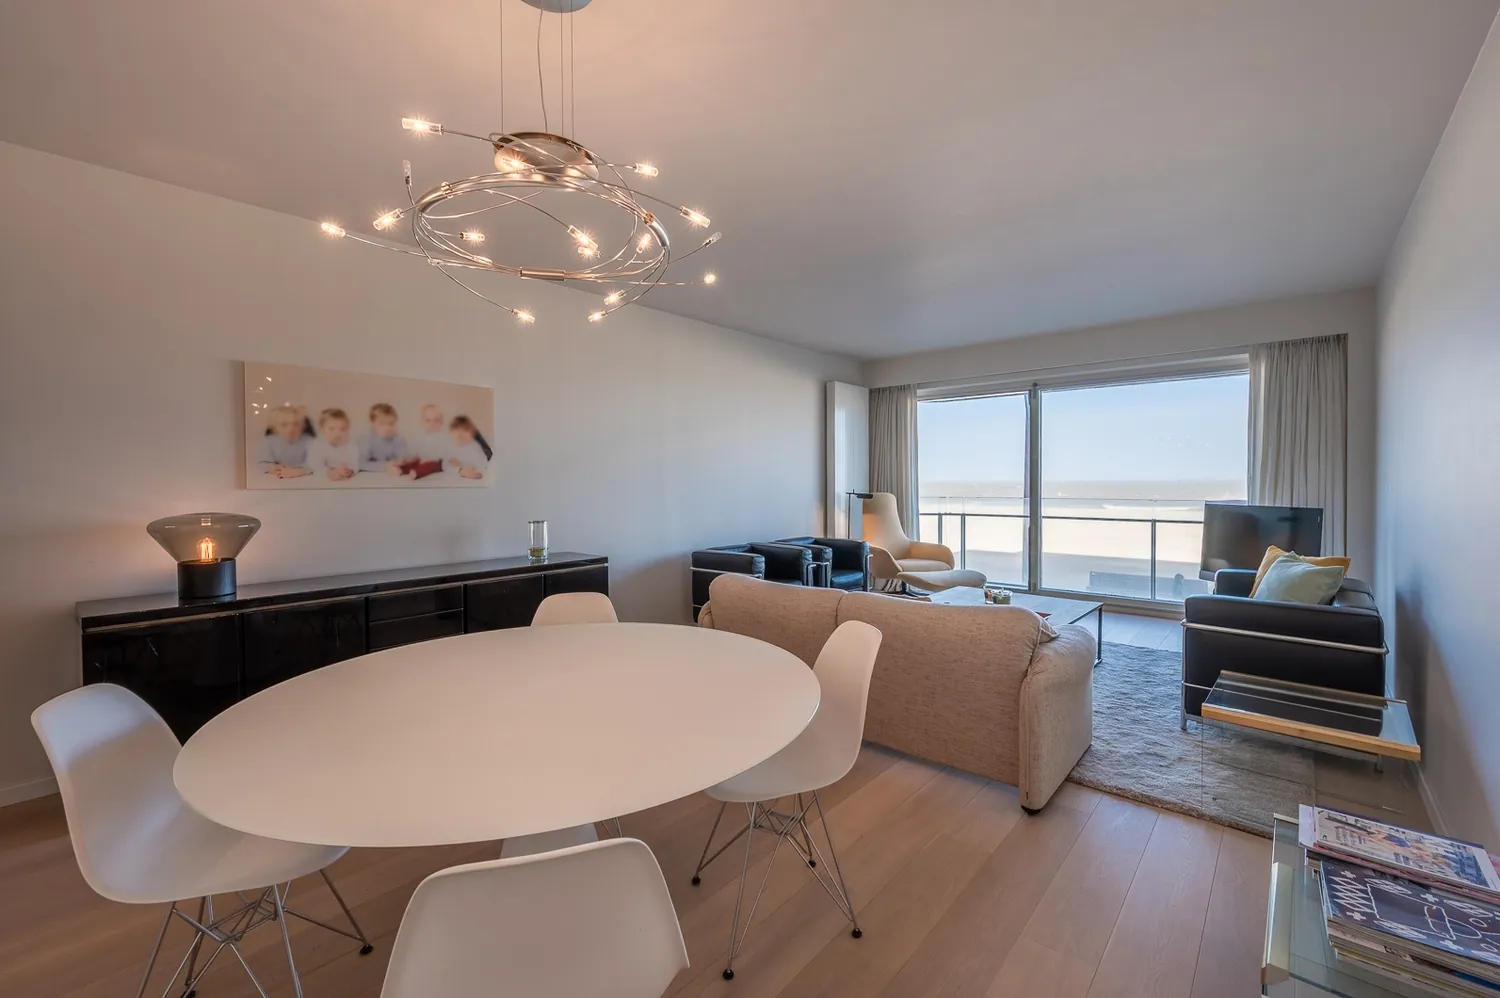 Appartement prêt à emménager avec vue frontale sur la mer, situé dans le Zoute.